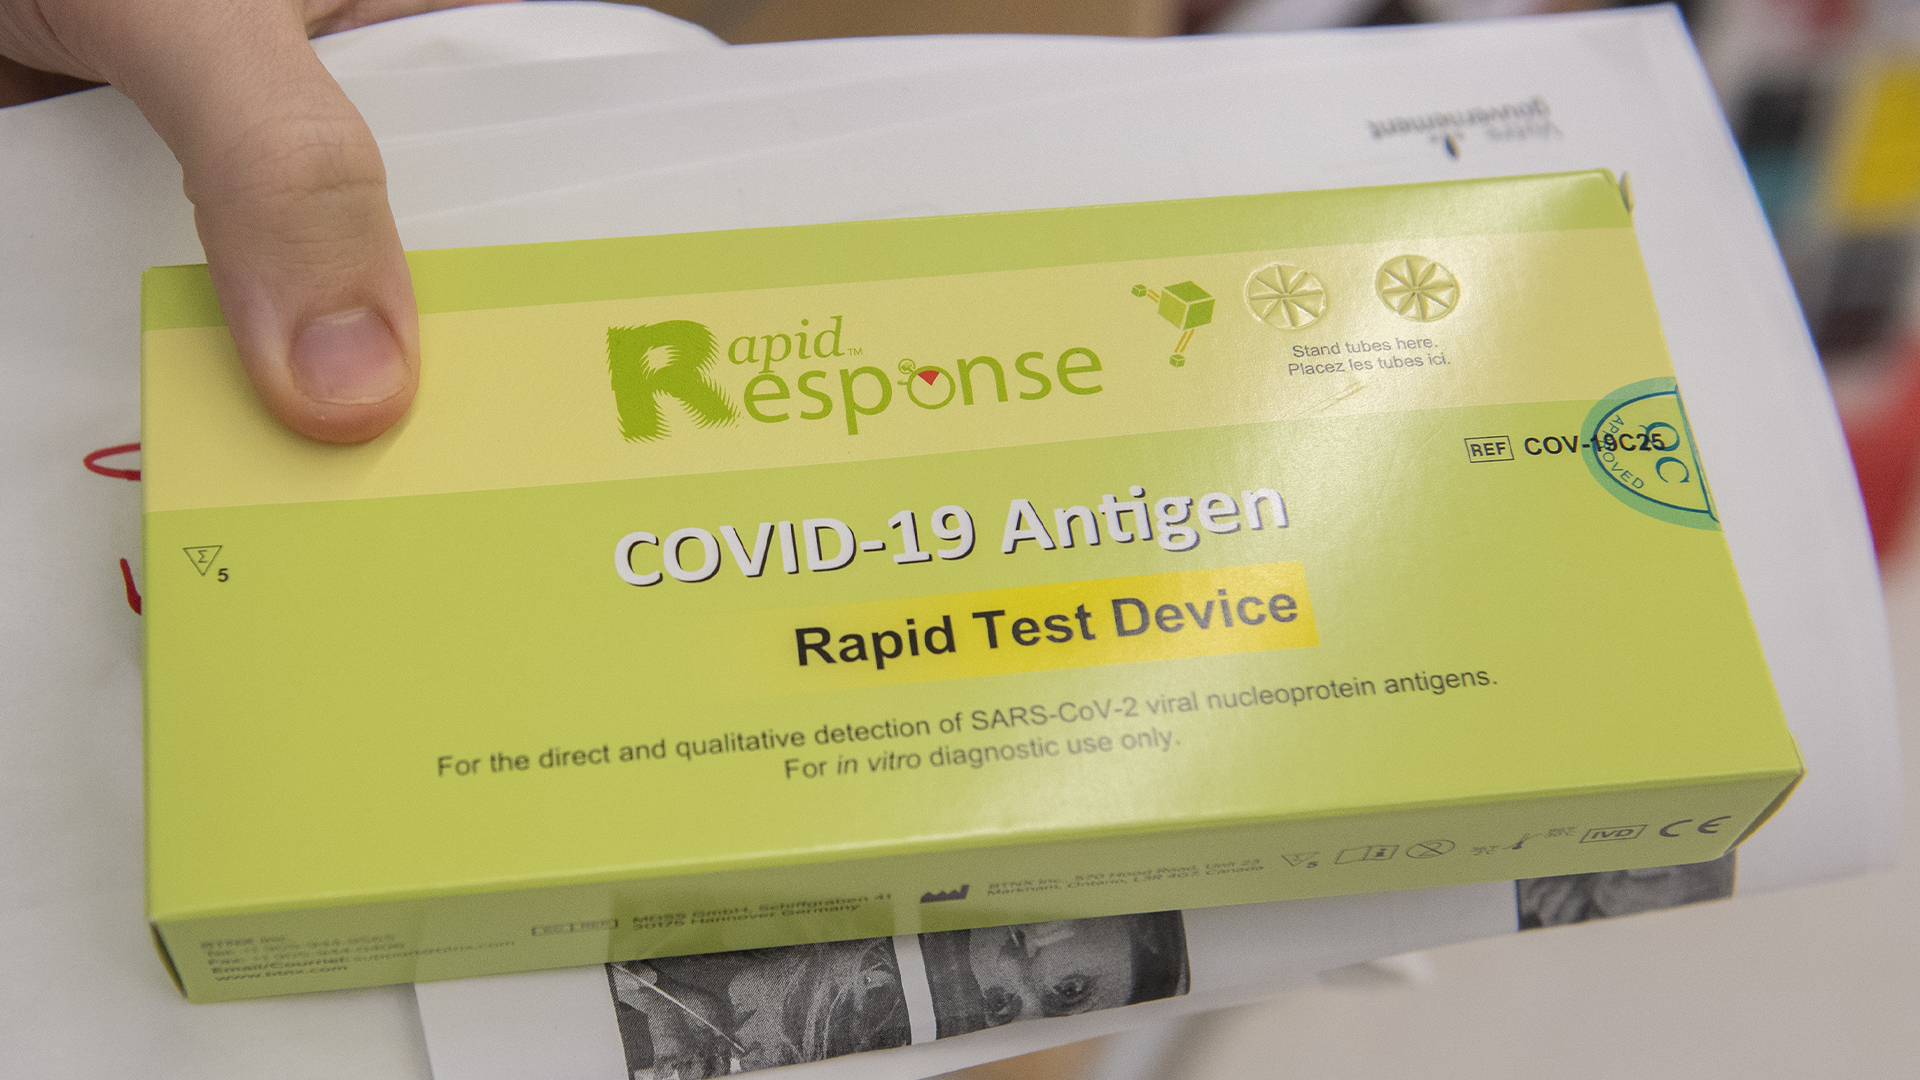 Les tests rapides sont disponibles dans plusieurs pharmacies du Québec.